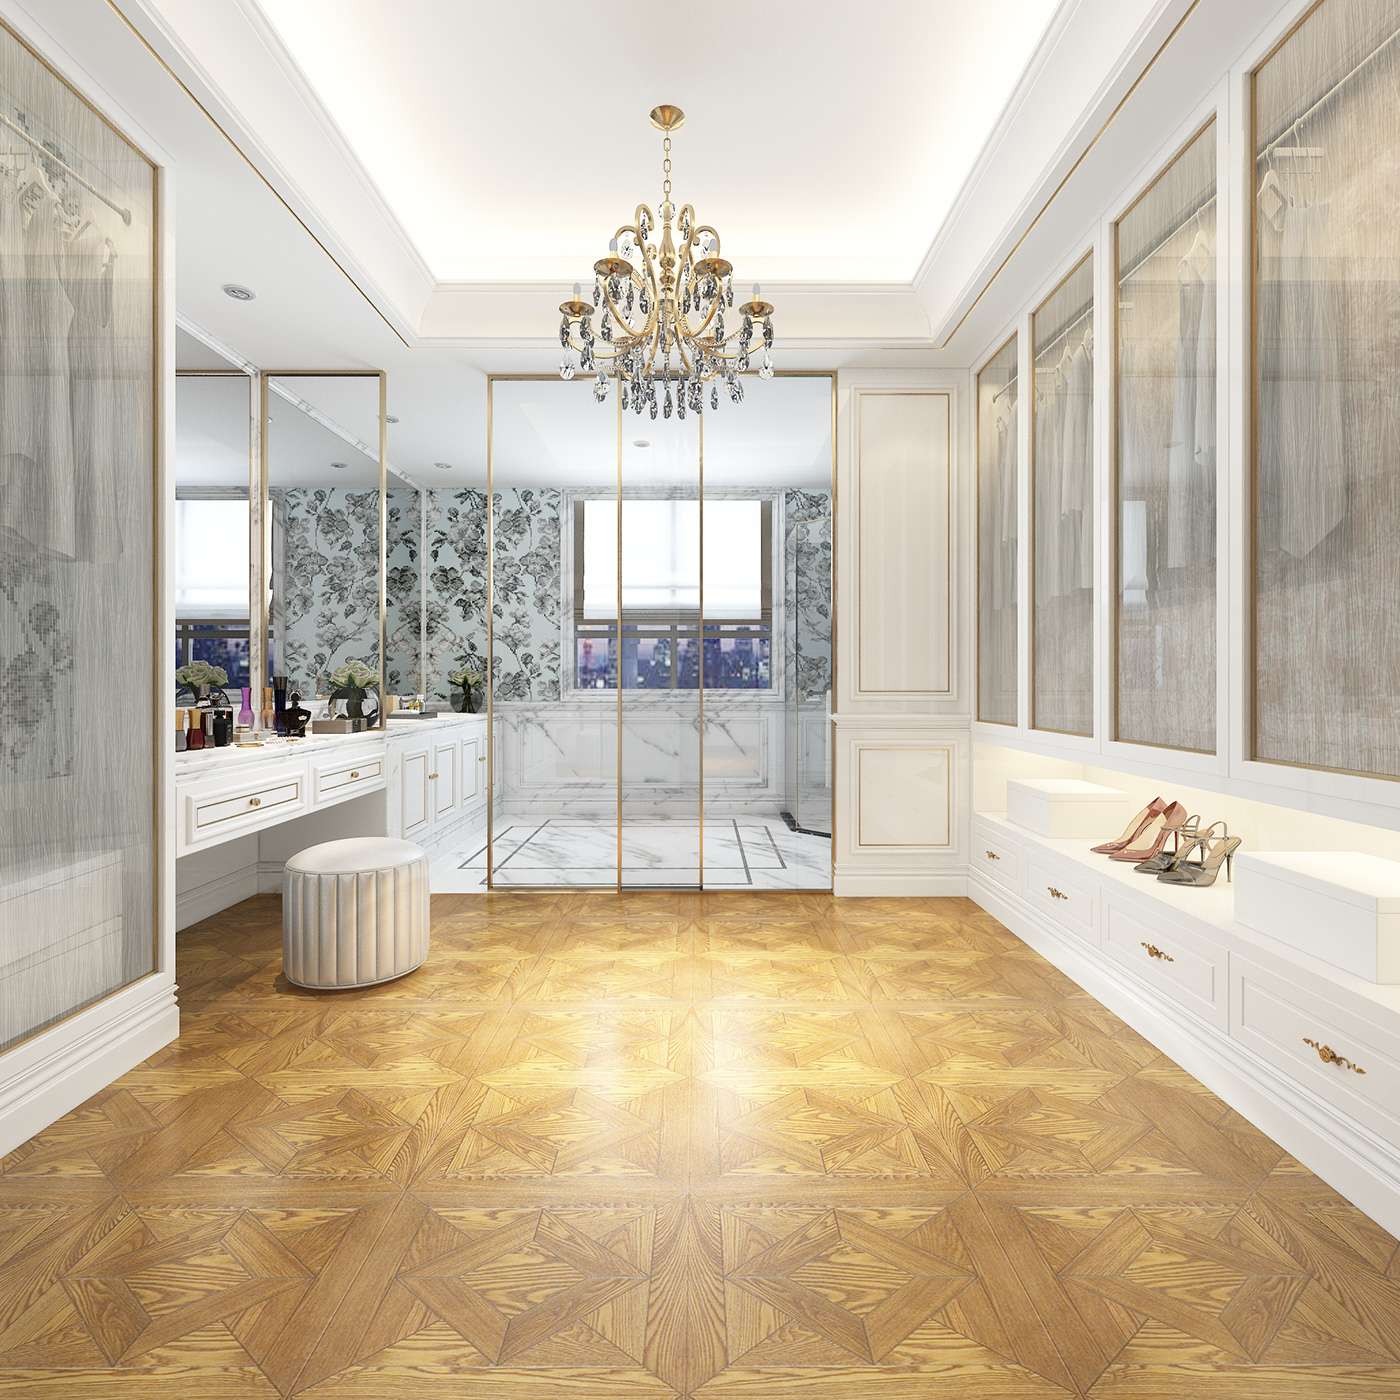 Thiết kế phòng tắm sang trọng cho biệt thự theo phong cách Châu Âu cao cấp